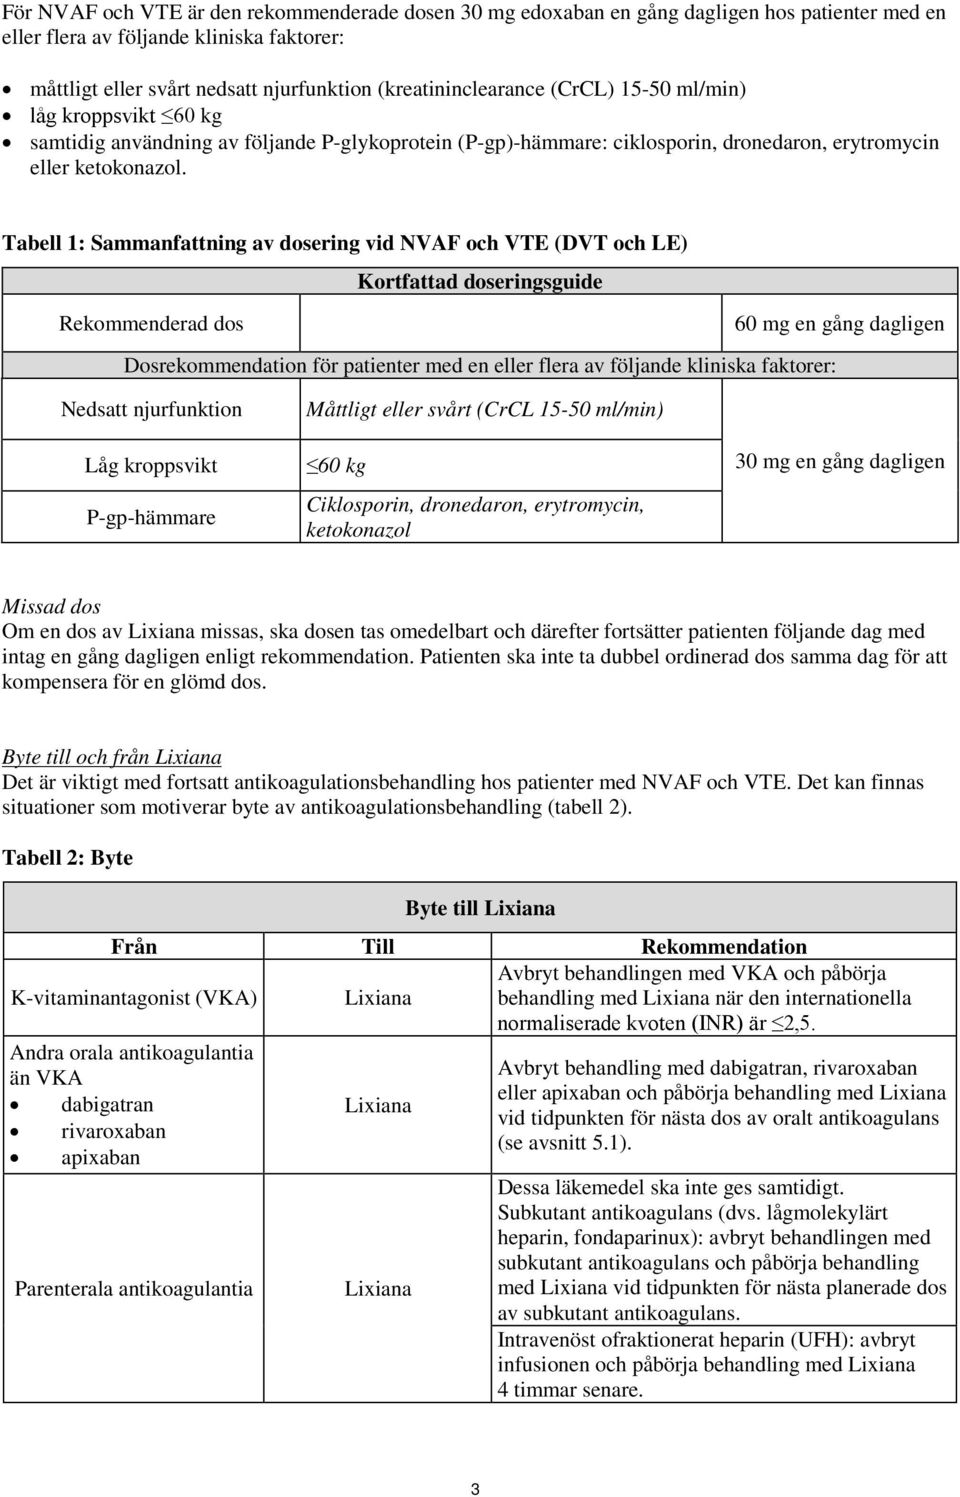 Tabell 1: Sammanfattning av dosering vid NVAF och VTE (DVT och LE) Rekommenderad dos Kortfattad doseringsguide 60 mg en gång dagligen Dosrekommendation för patienter med en eller flera av följande